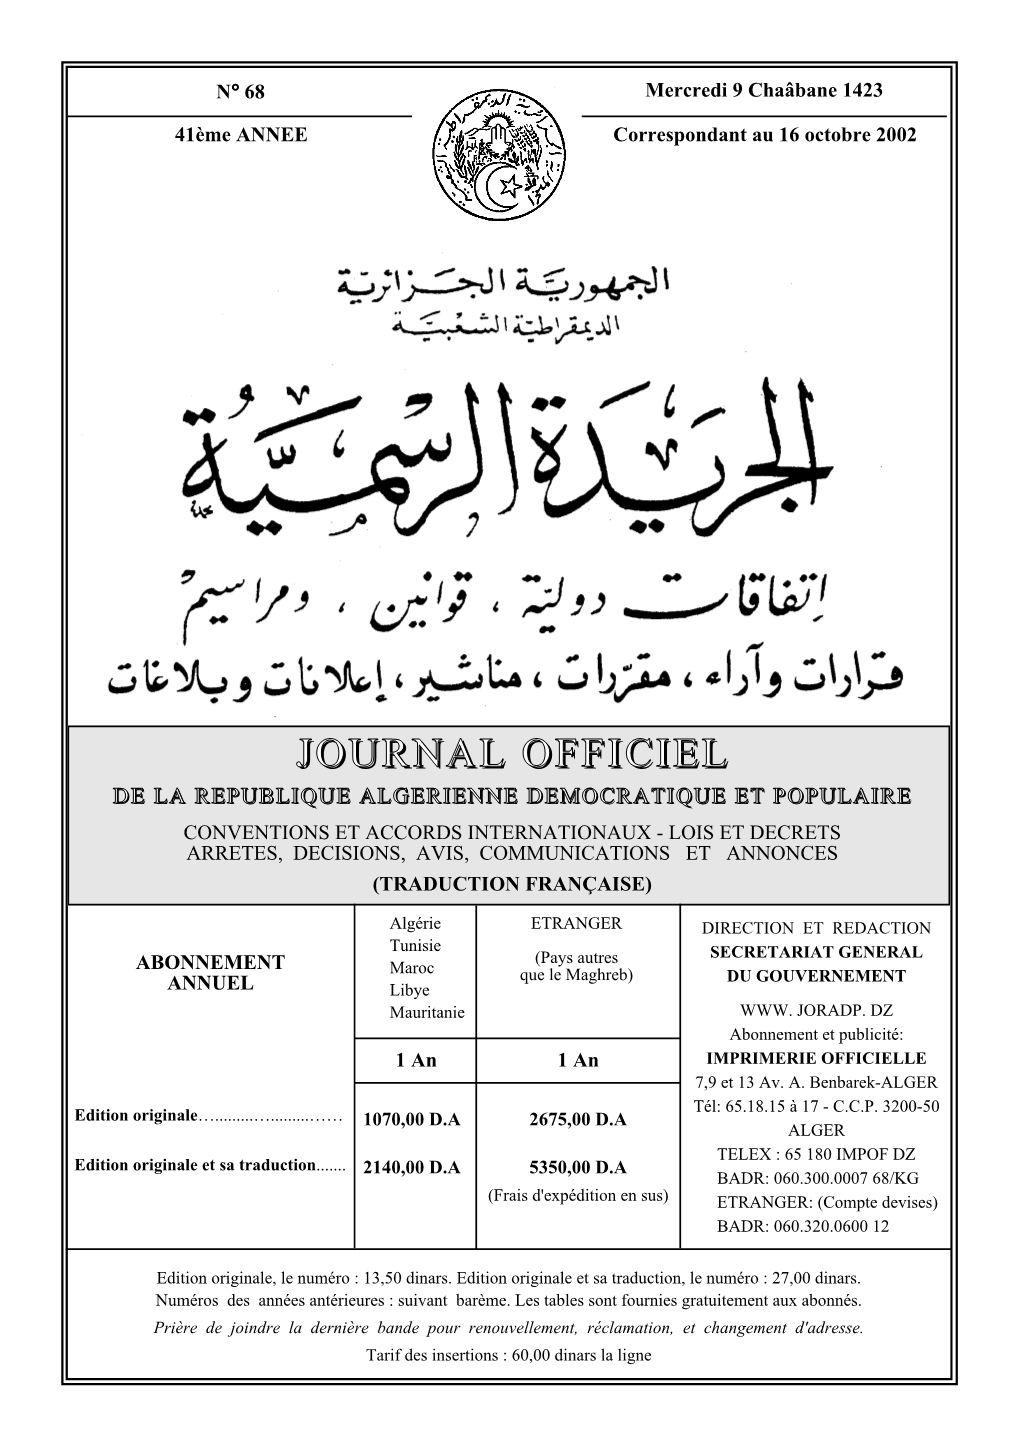 JOURNAL OFFICIEL DE LA REPUBLIQUE ALGERIENNE N 68 16 Octobre 2002